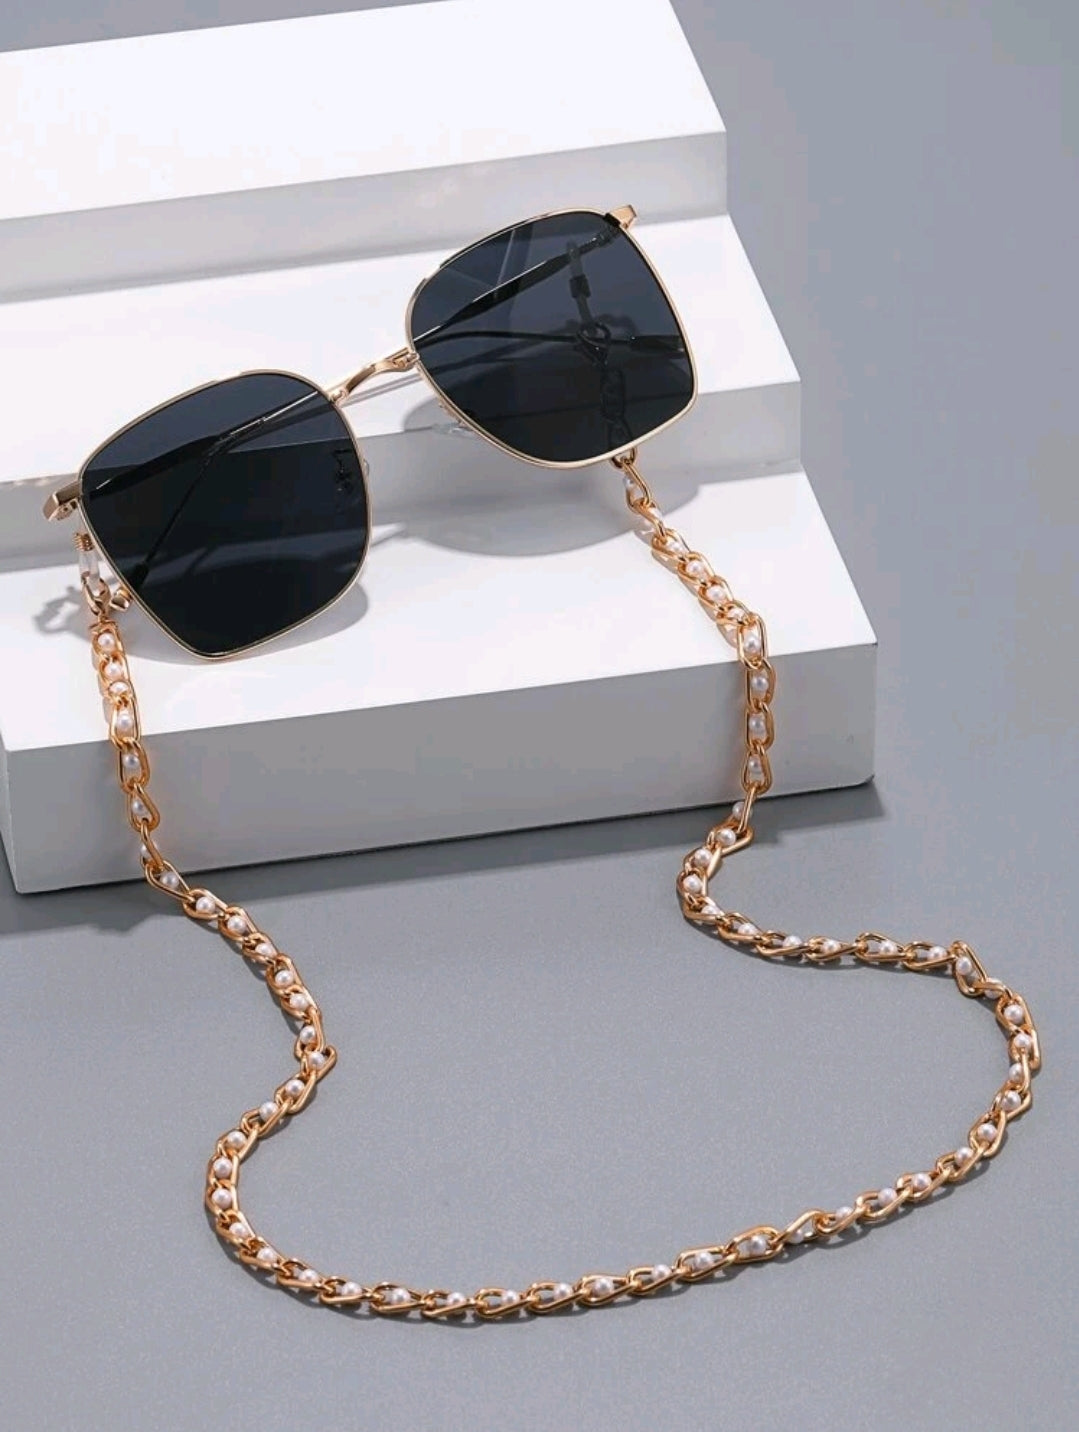 White & Gold Chain Sunglasses